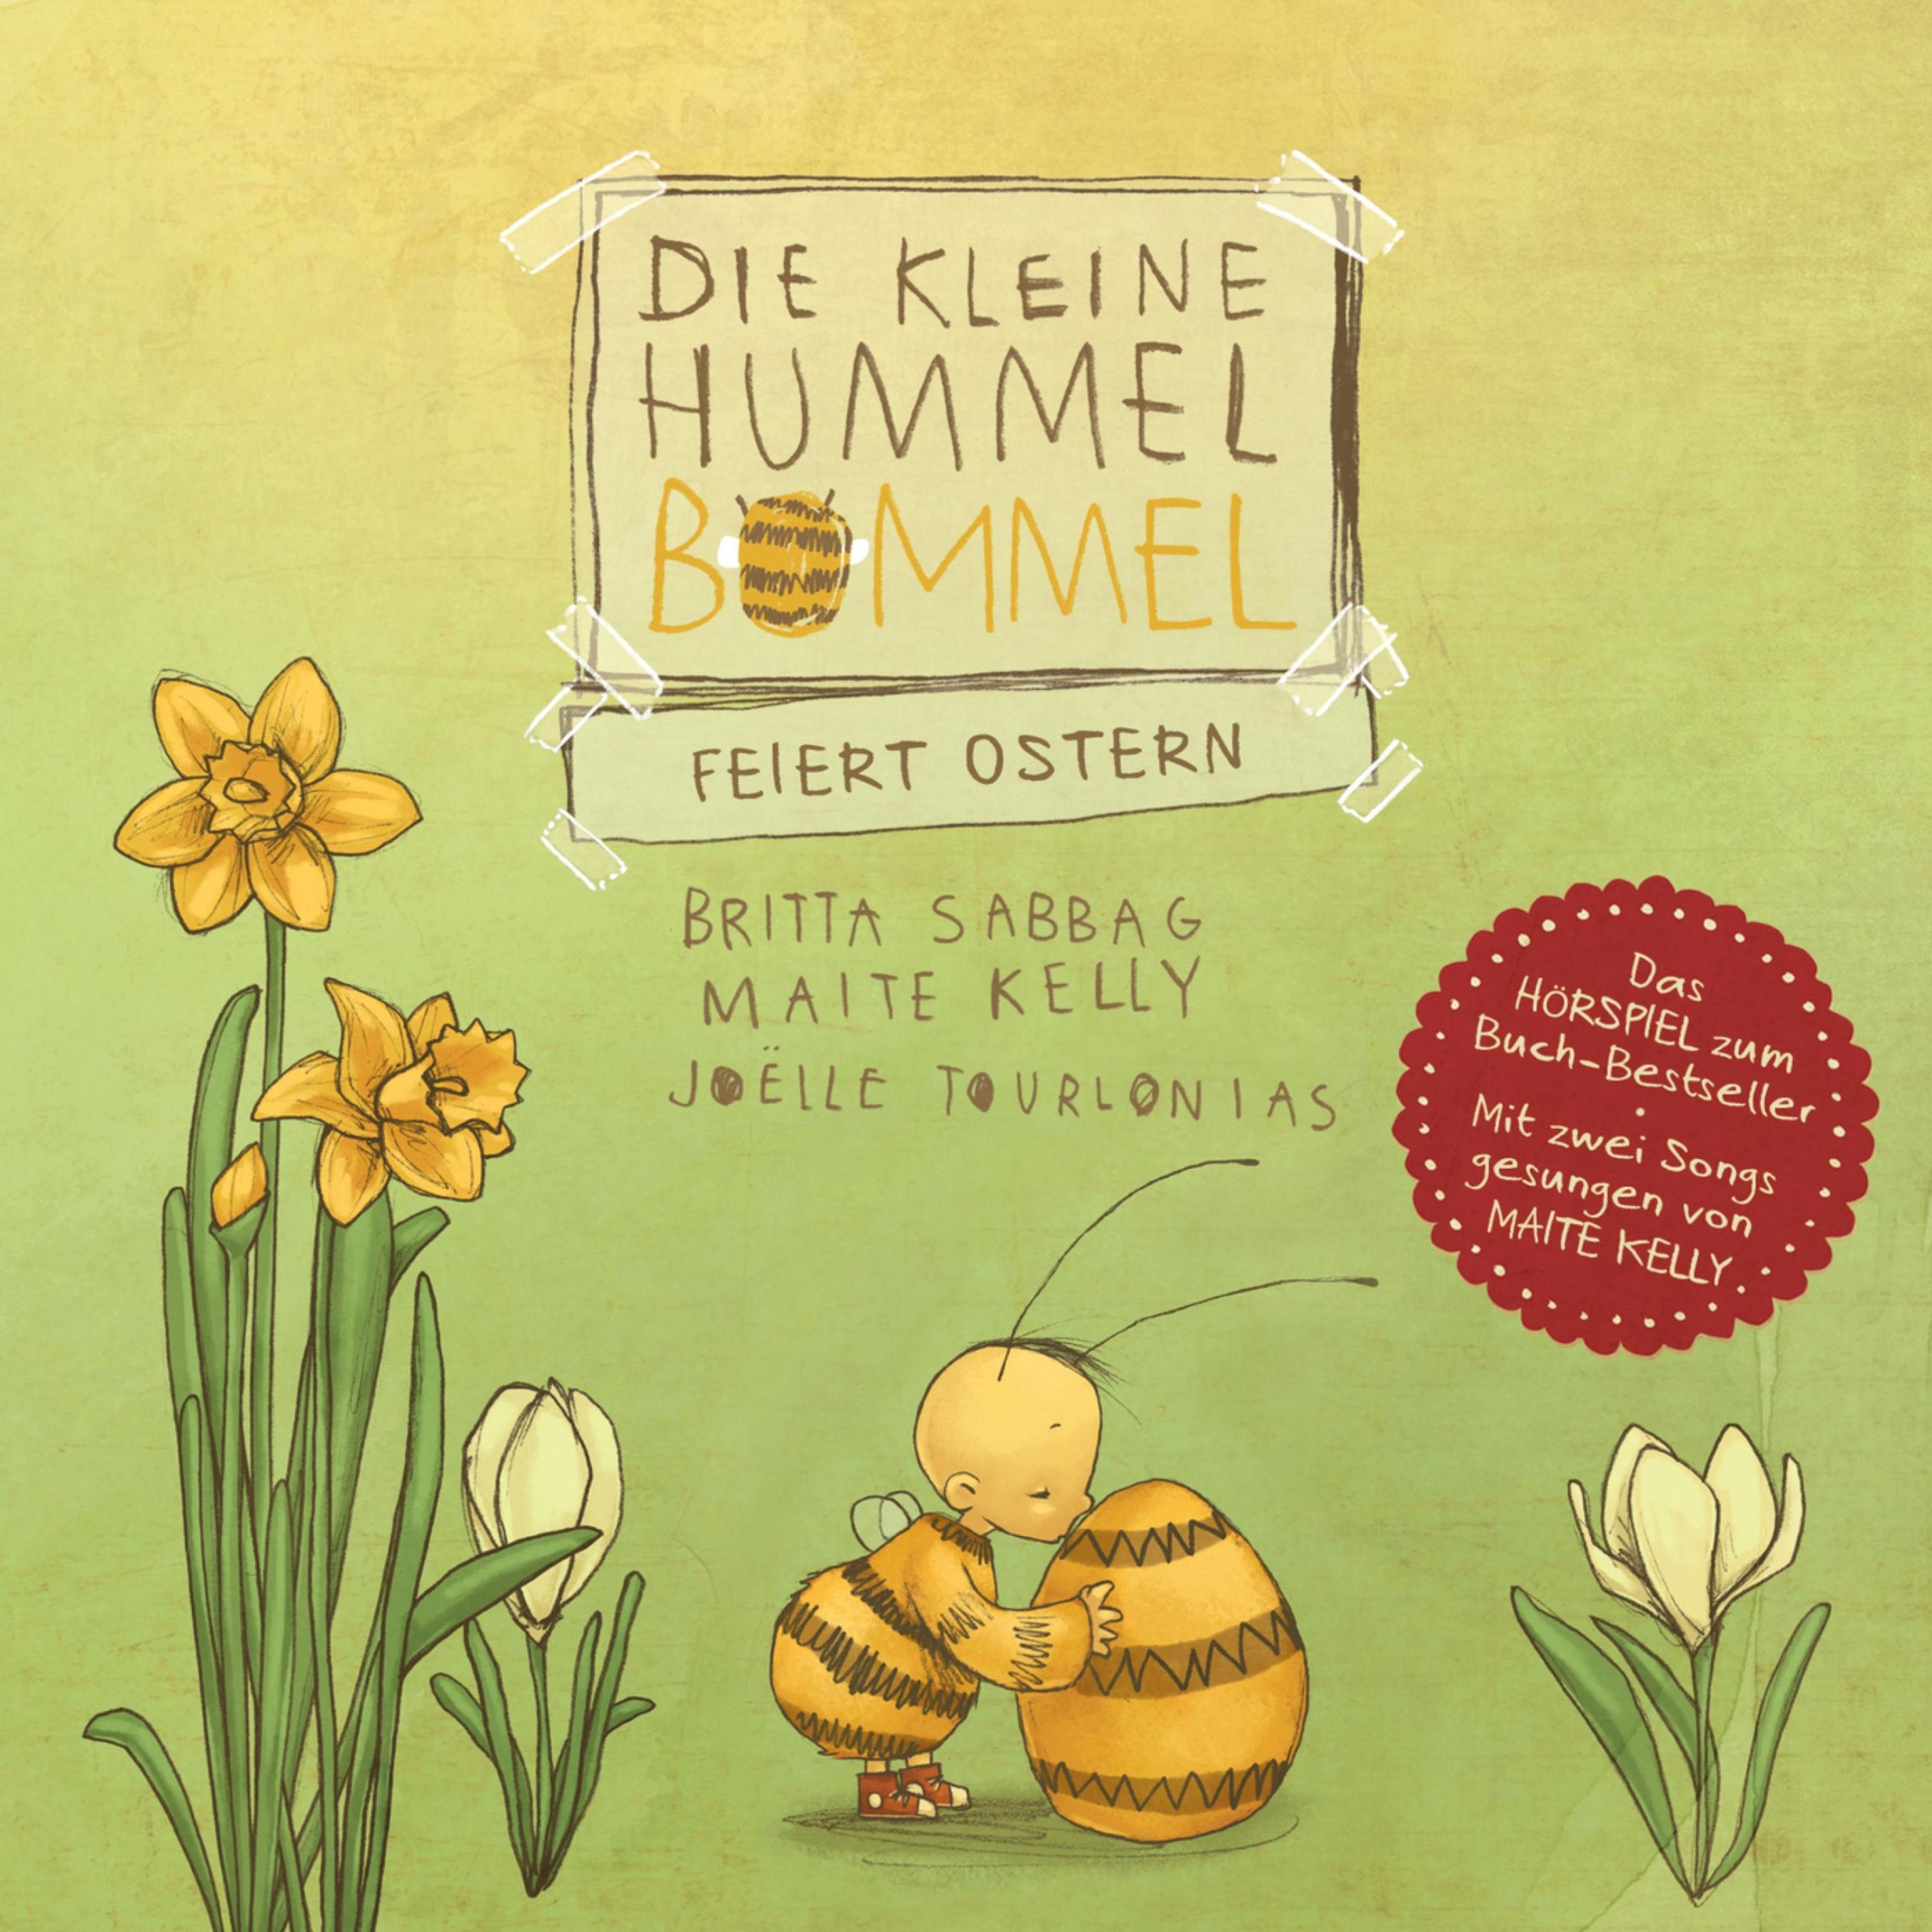 Die kleine Hummel Bommel - Die kleine Hummel Bommel feiert Ostern Hörbuch  Download